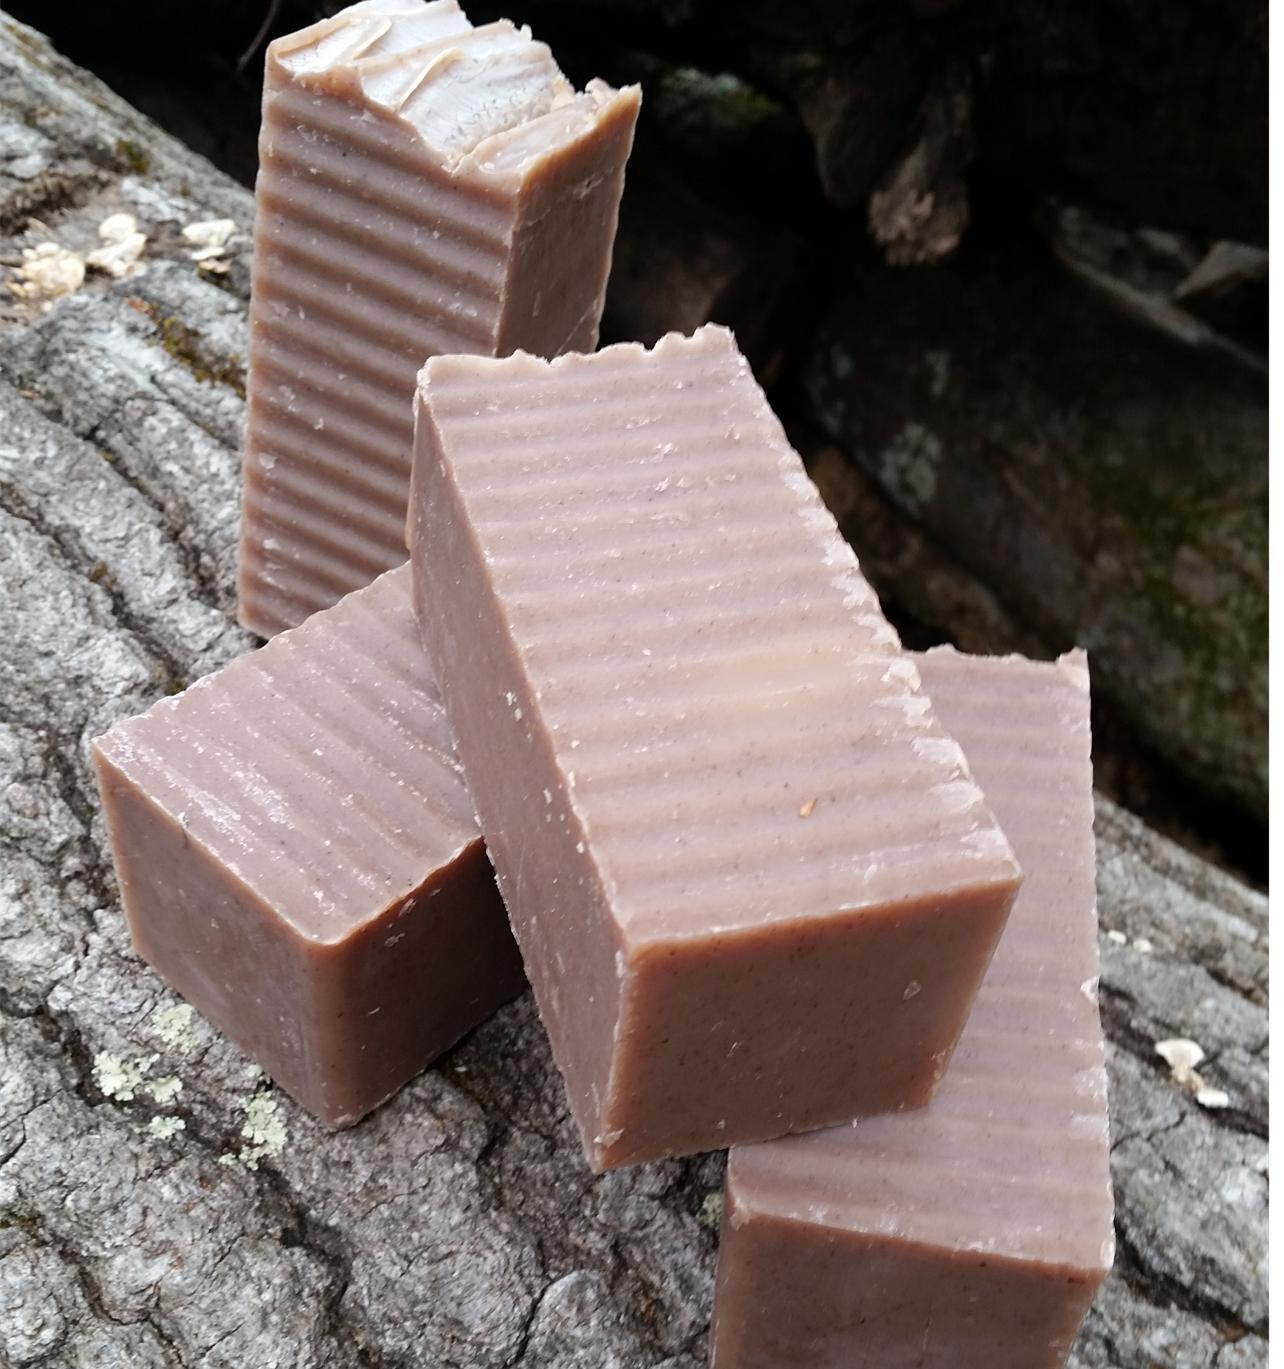 Black Walnut Outdoor Handmade Natural Soap